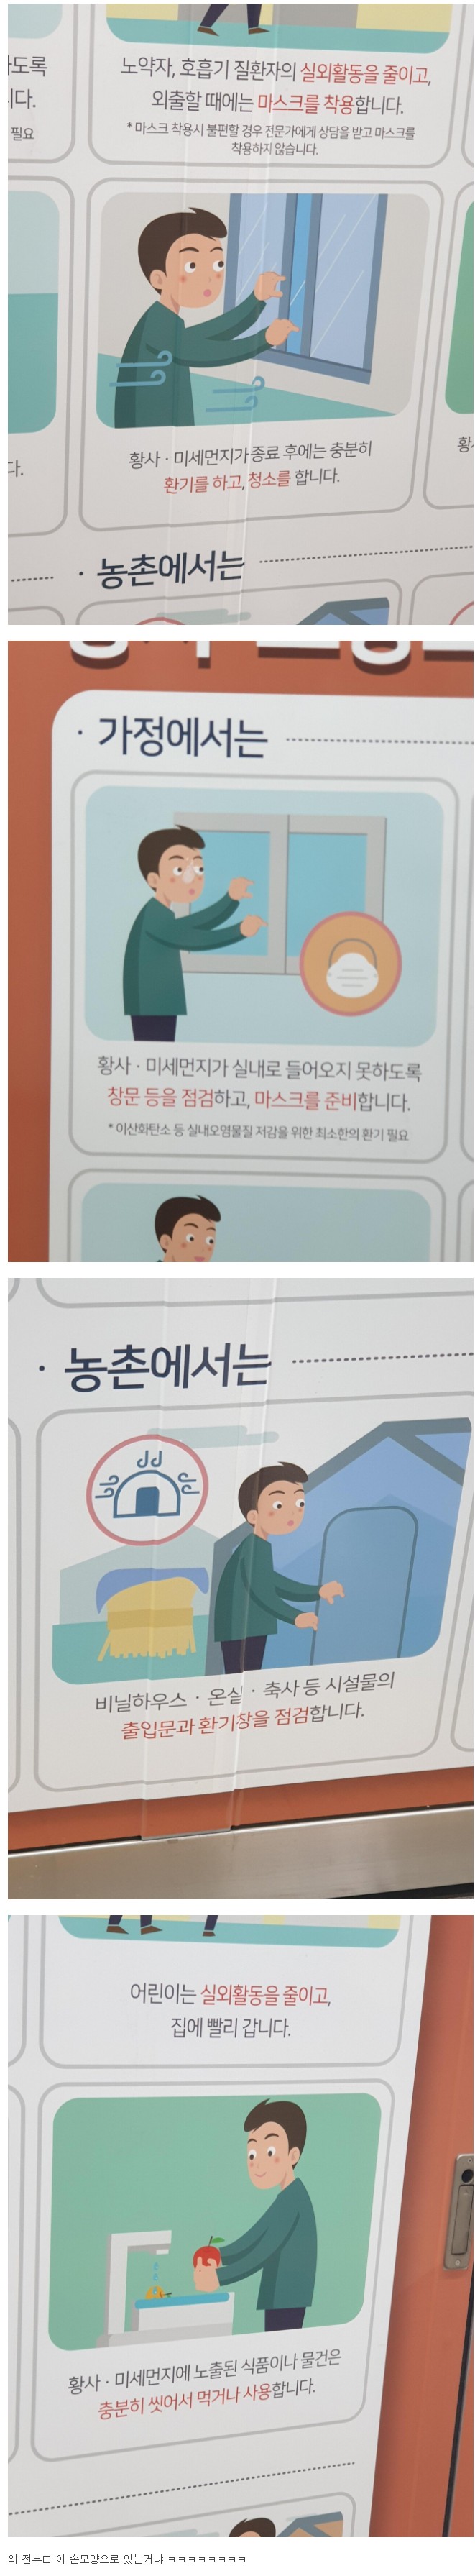 어디에도 존재.. 인천 지하철 '그 손가락' 근황